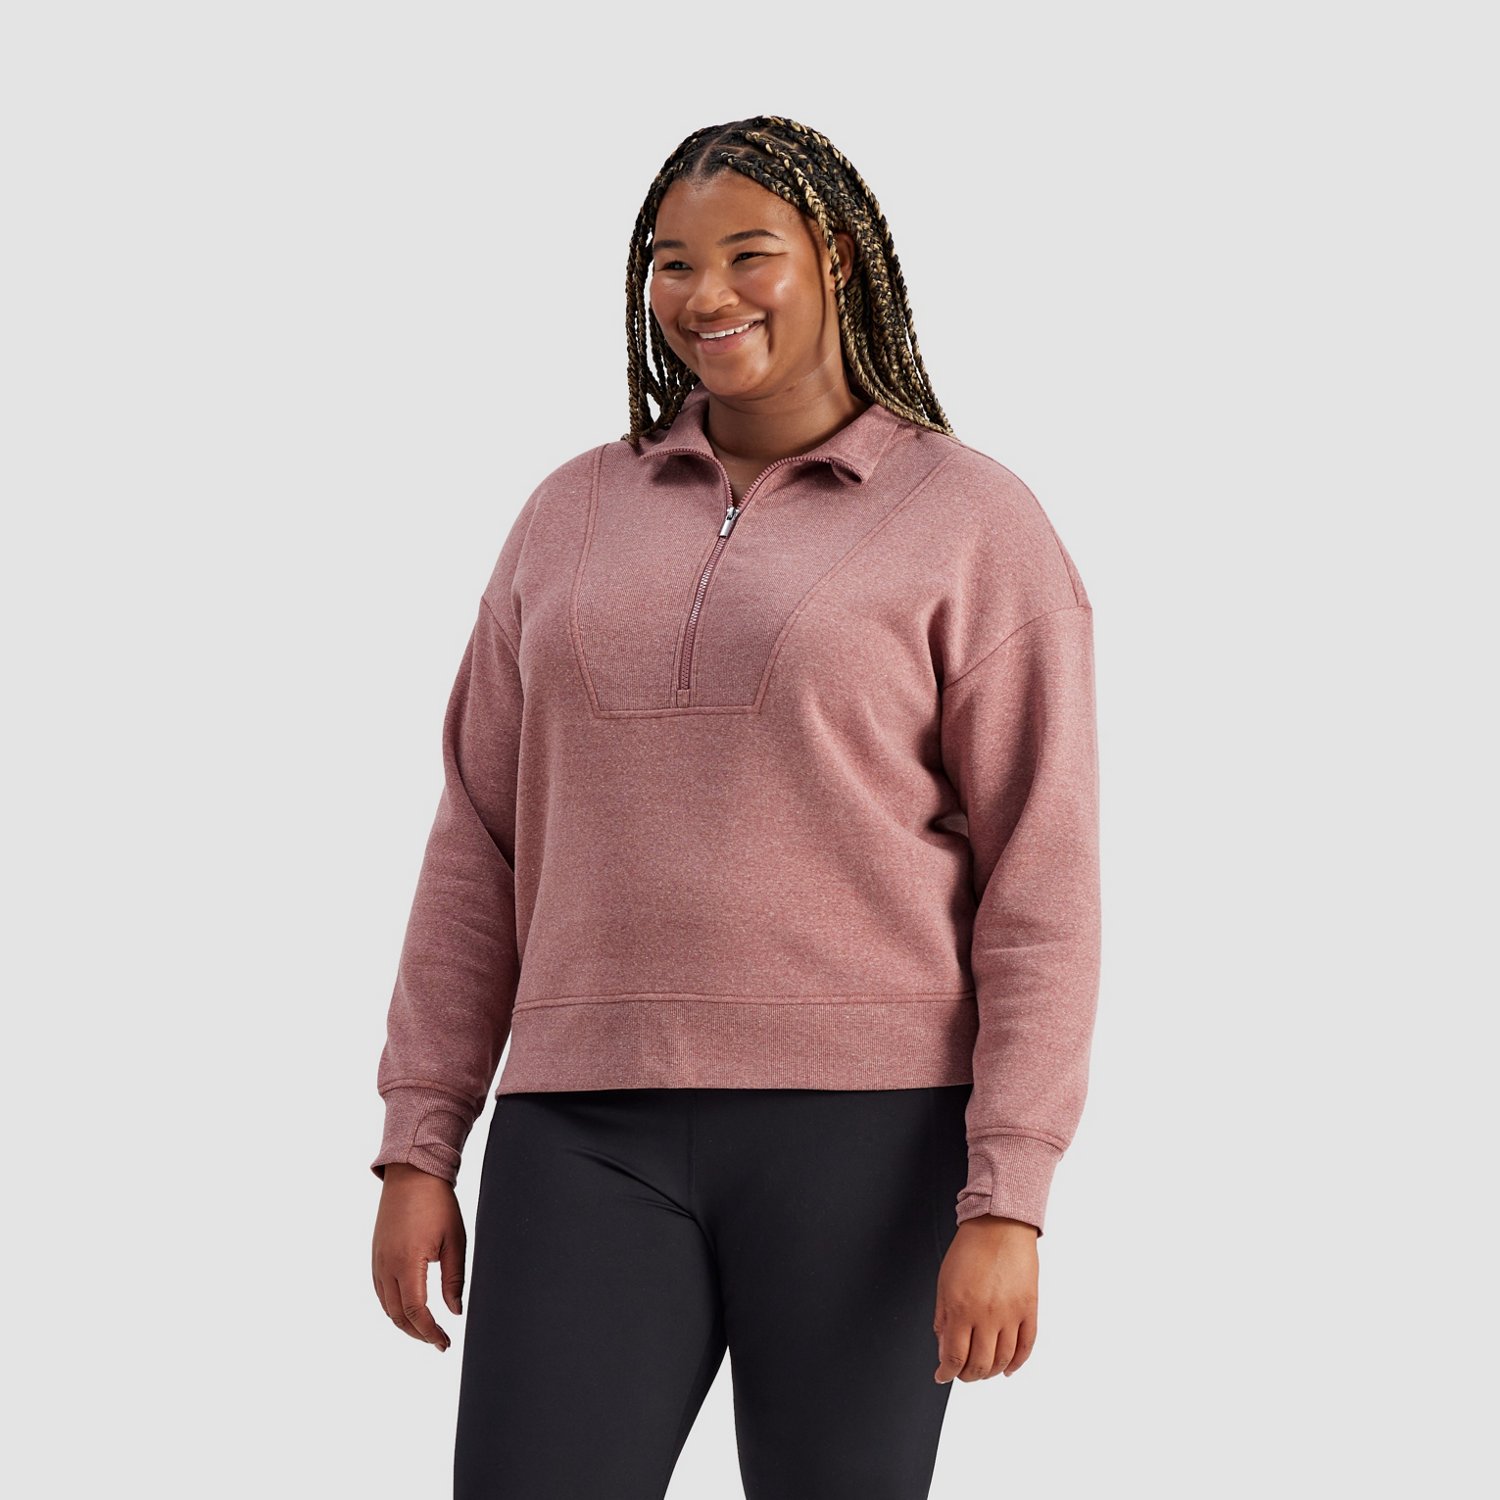 Women's Plus Size Cotton Fleece 1/4 Zip Sweatshirt - All in Motion